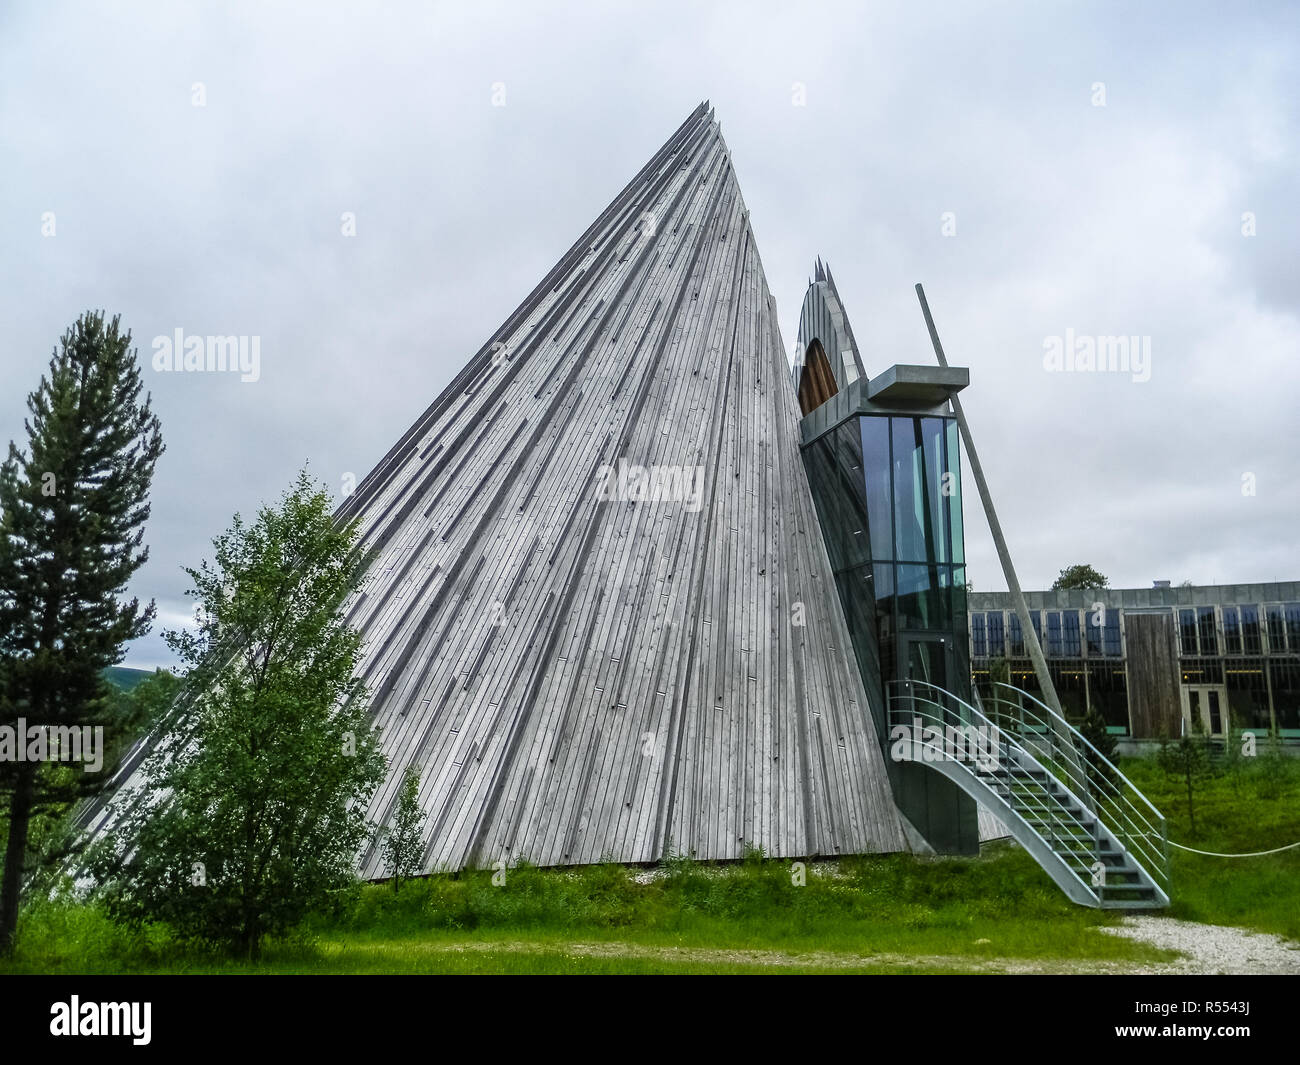 KARSJOK, Noruega, el 8 de abril de 2016: la madera del Parlamento sami de Laponia Foto de stock